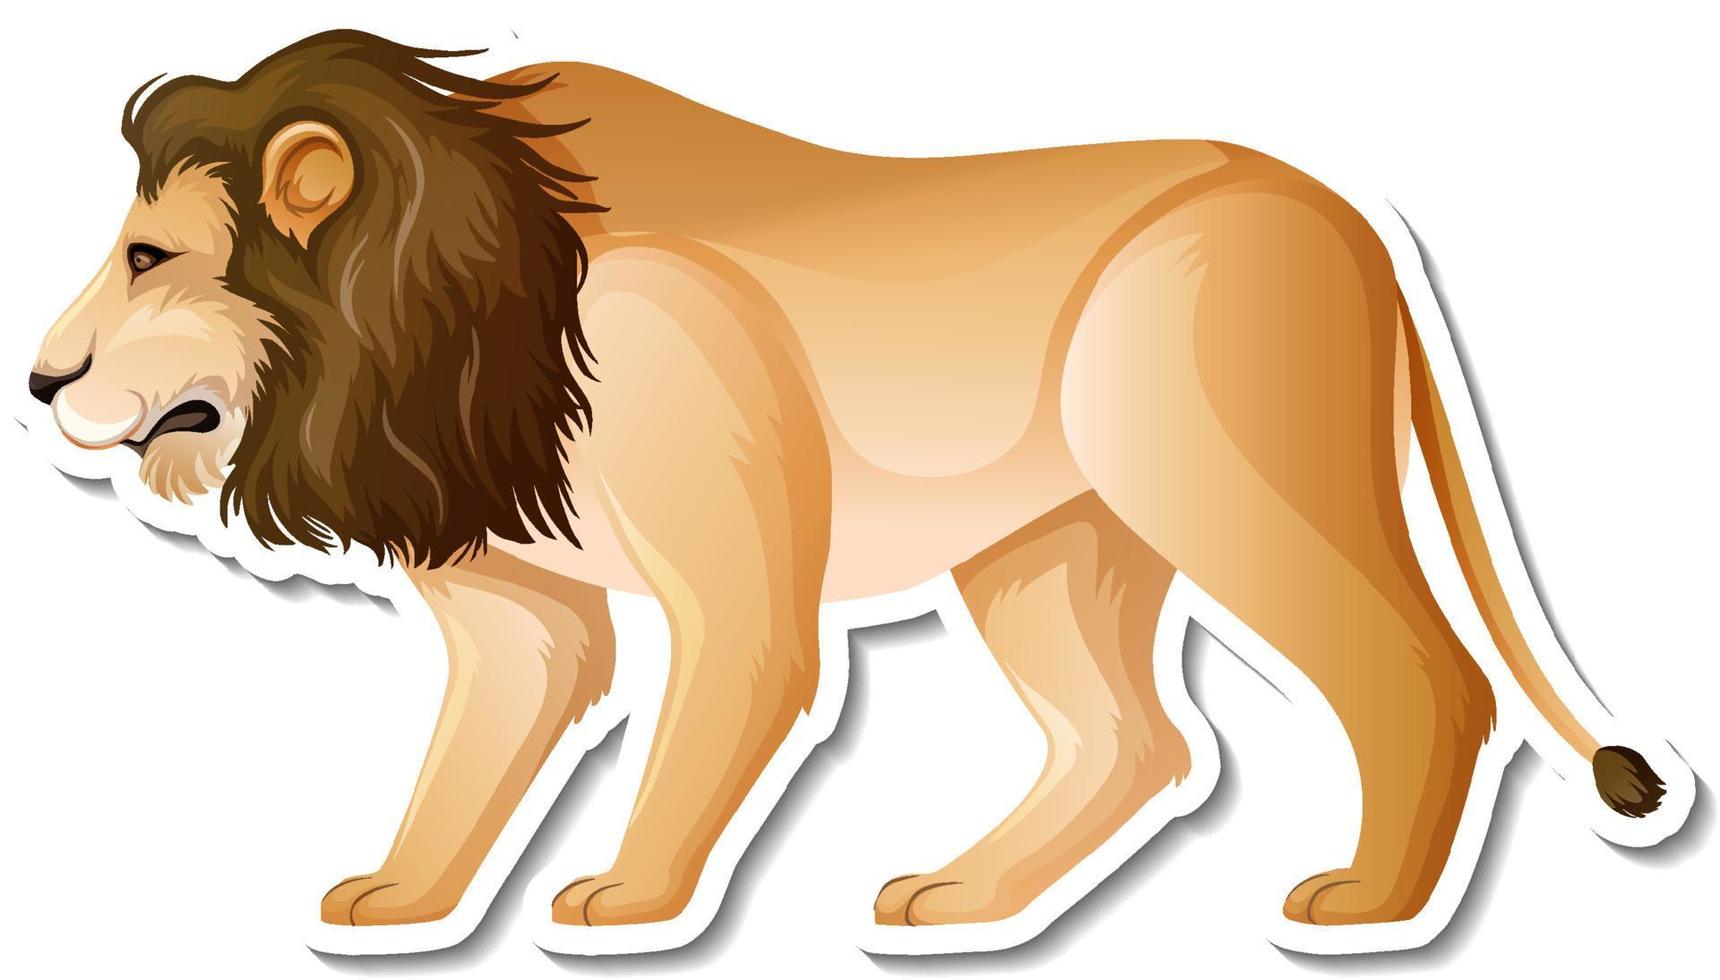 un modèle d'autocollant de personnage de dessin animé de lion vecteur